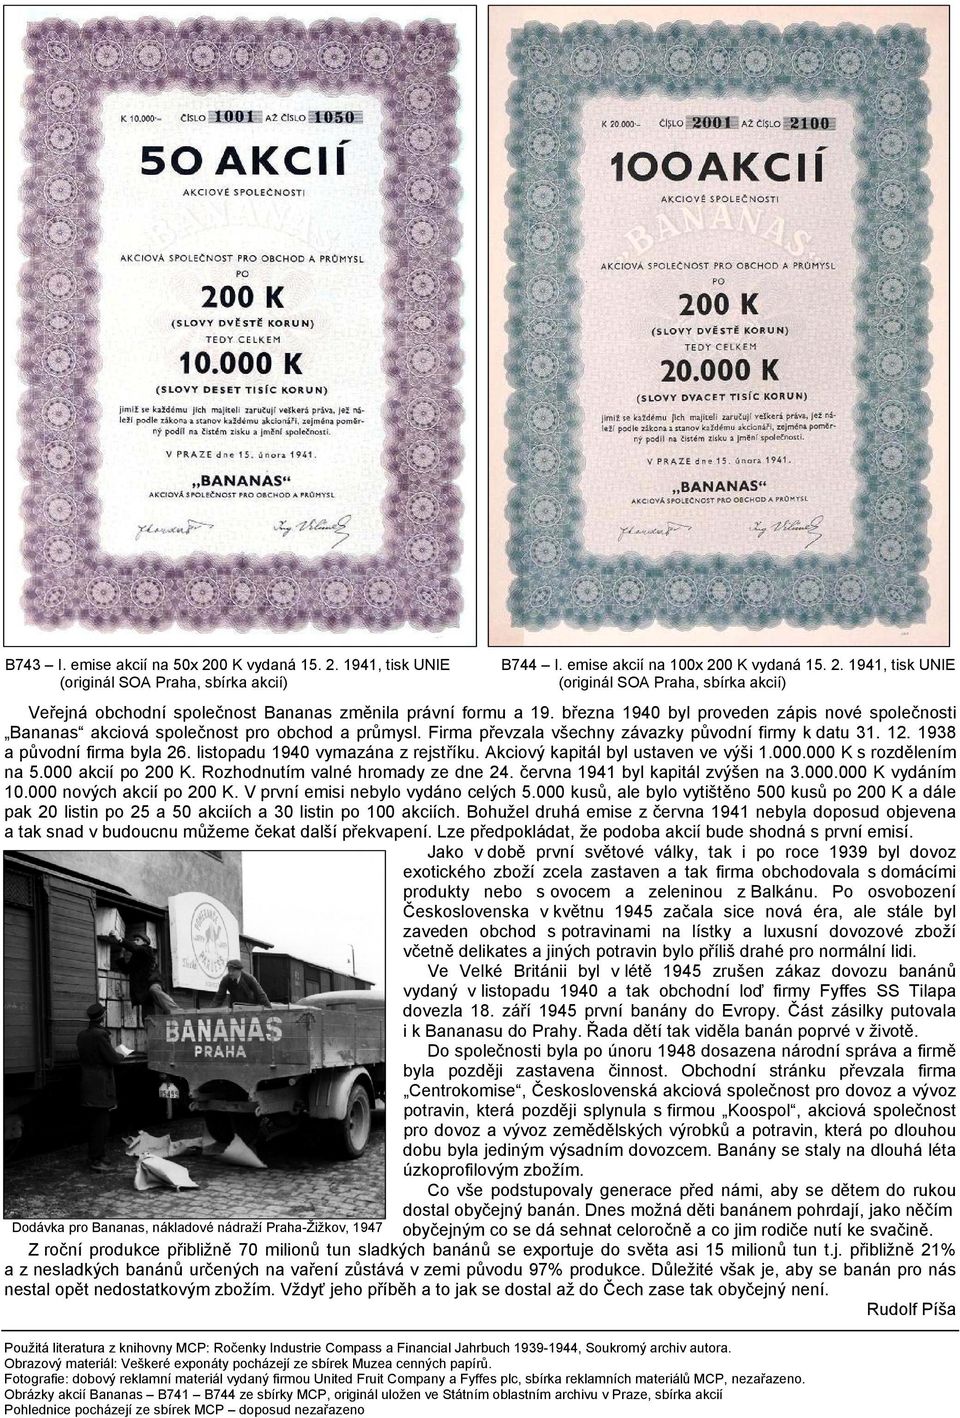 listopadu 1940 vymazána z rejstříku. Akciový kapitál byl ustaven ve výši 1.000.000 K s rozdělením na 5.000 akcií po 200 K. Rozhodnutím valné hromady ze dne 24. června 1941 byl kapitál zvýšen na 3.000.000 K vydáním 10.